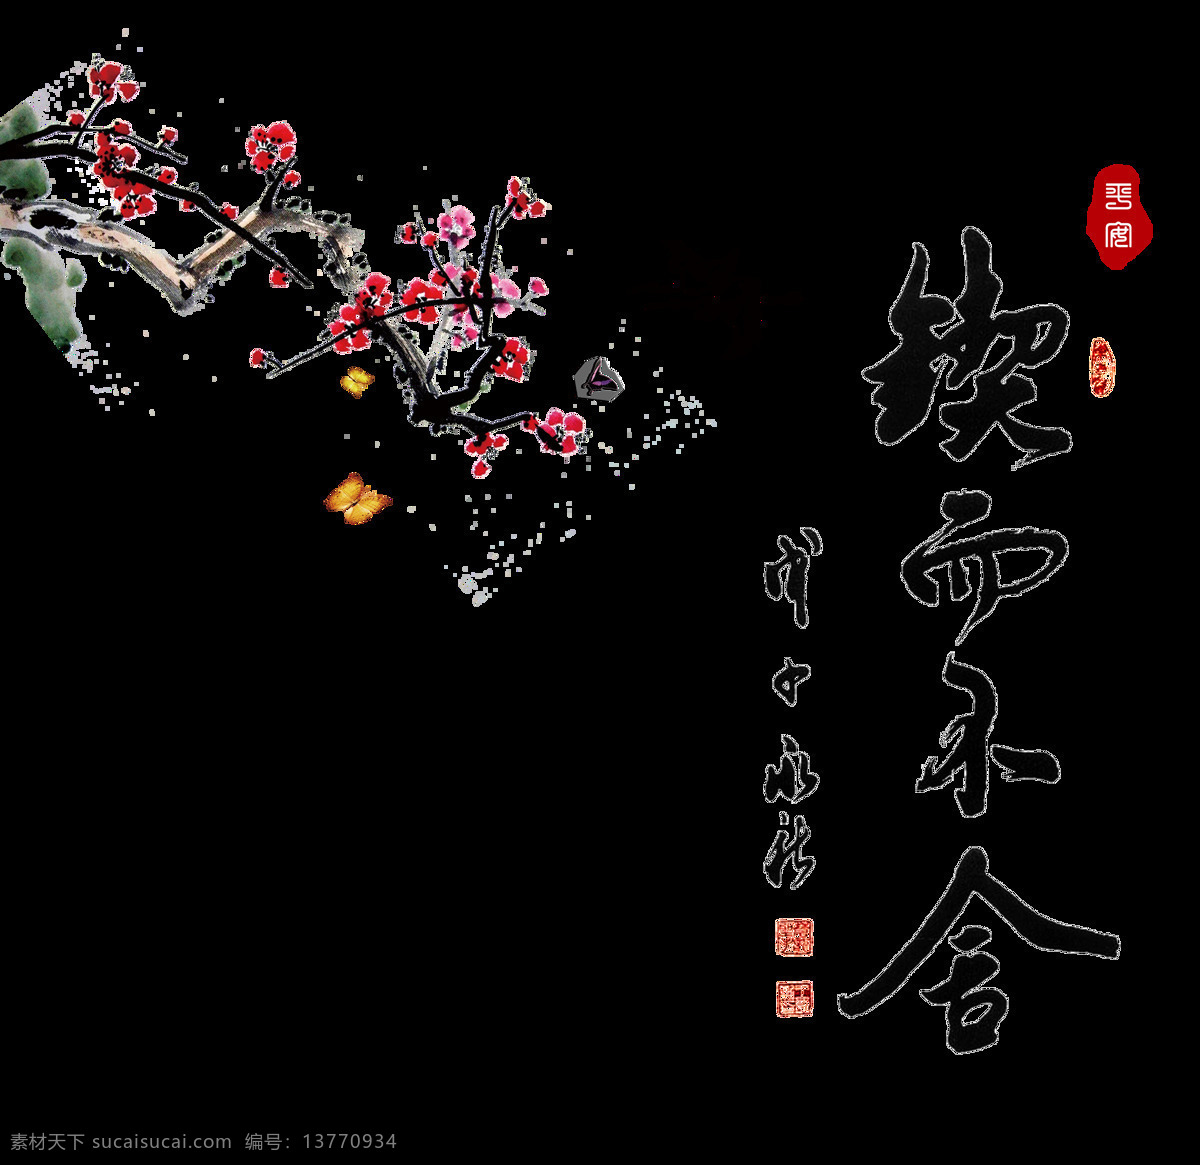 契 不 舍 花朵 中国 风 古典 艺术 字 励志 中国风 元素 契而不舍 坚持 艺术字 古风